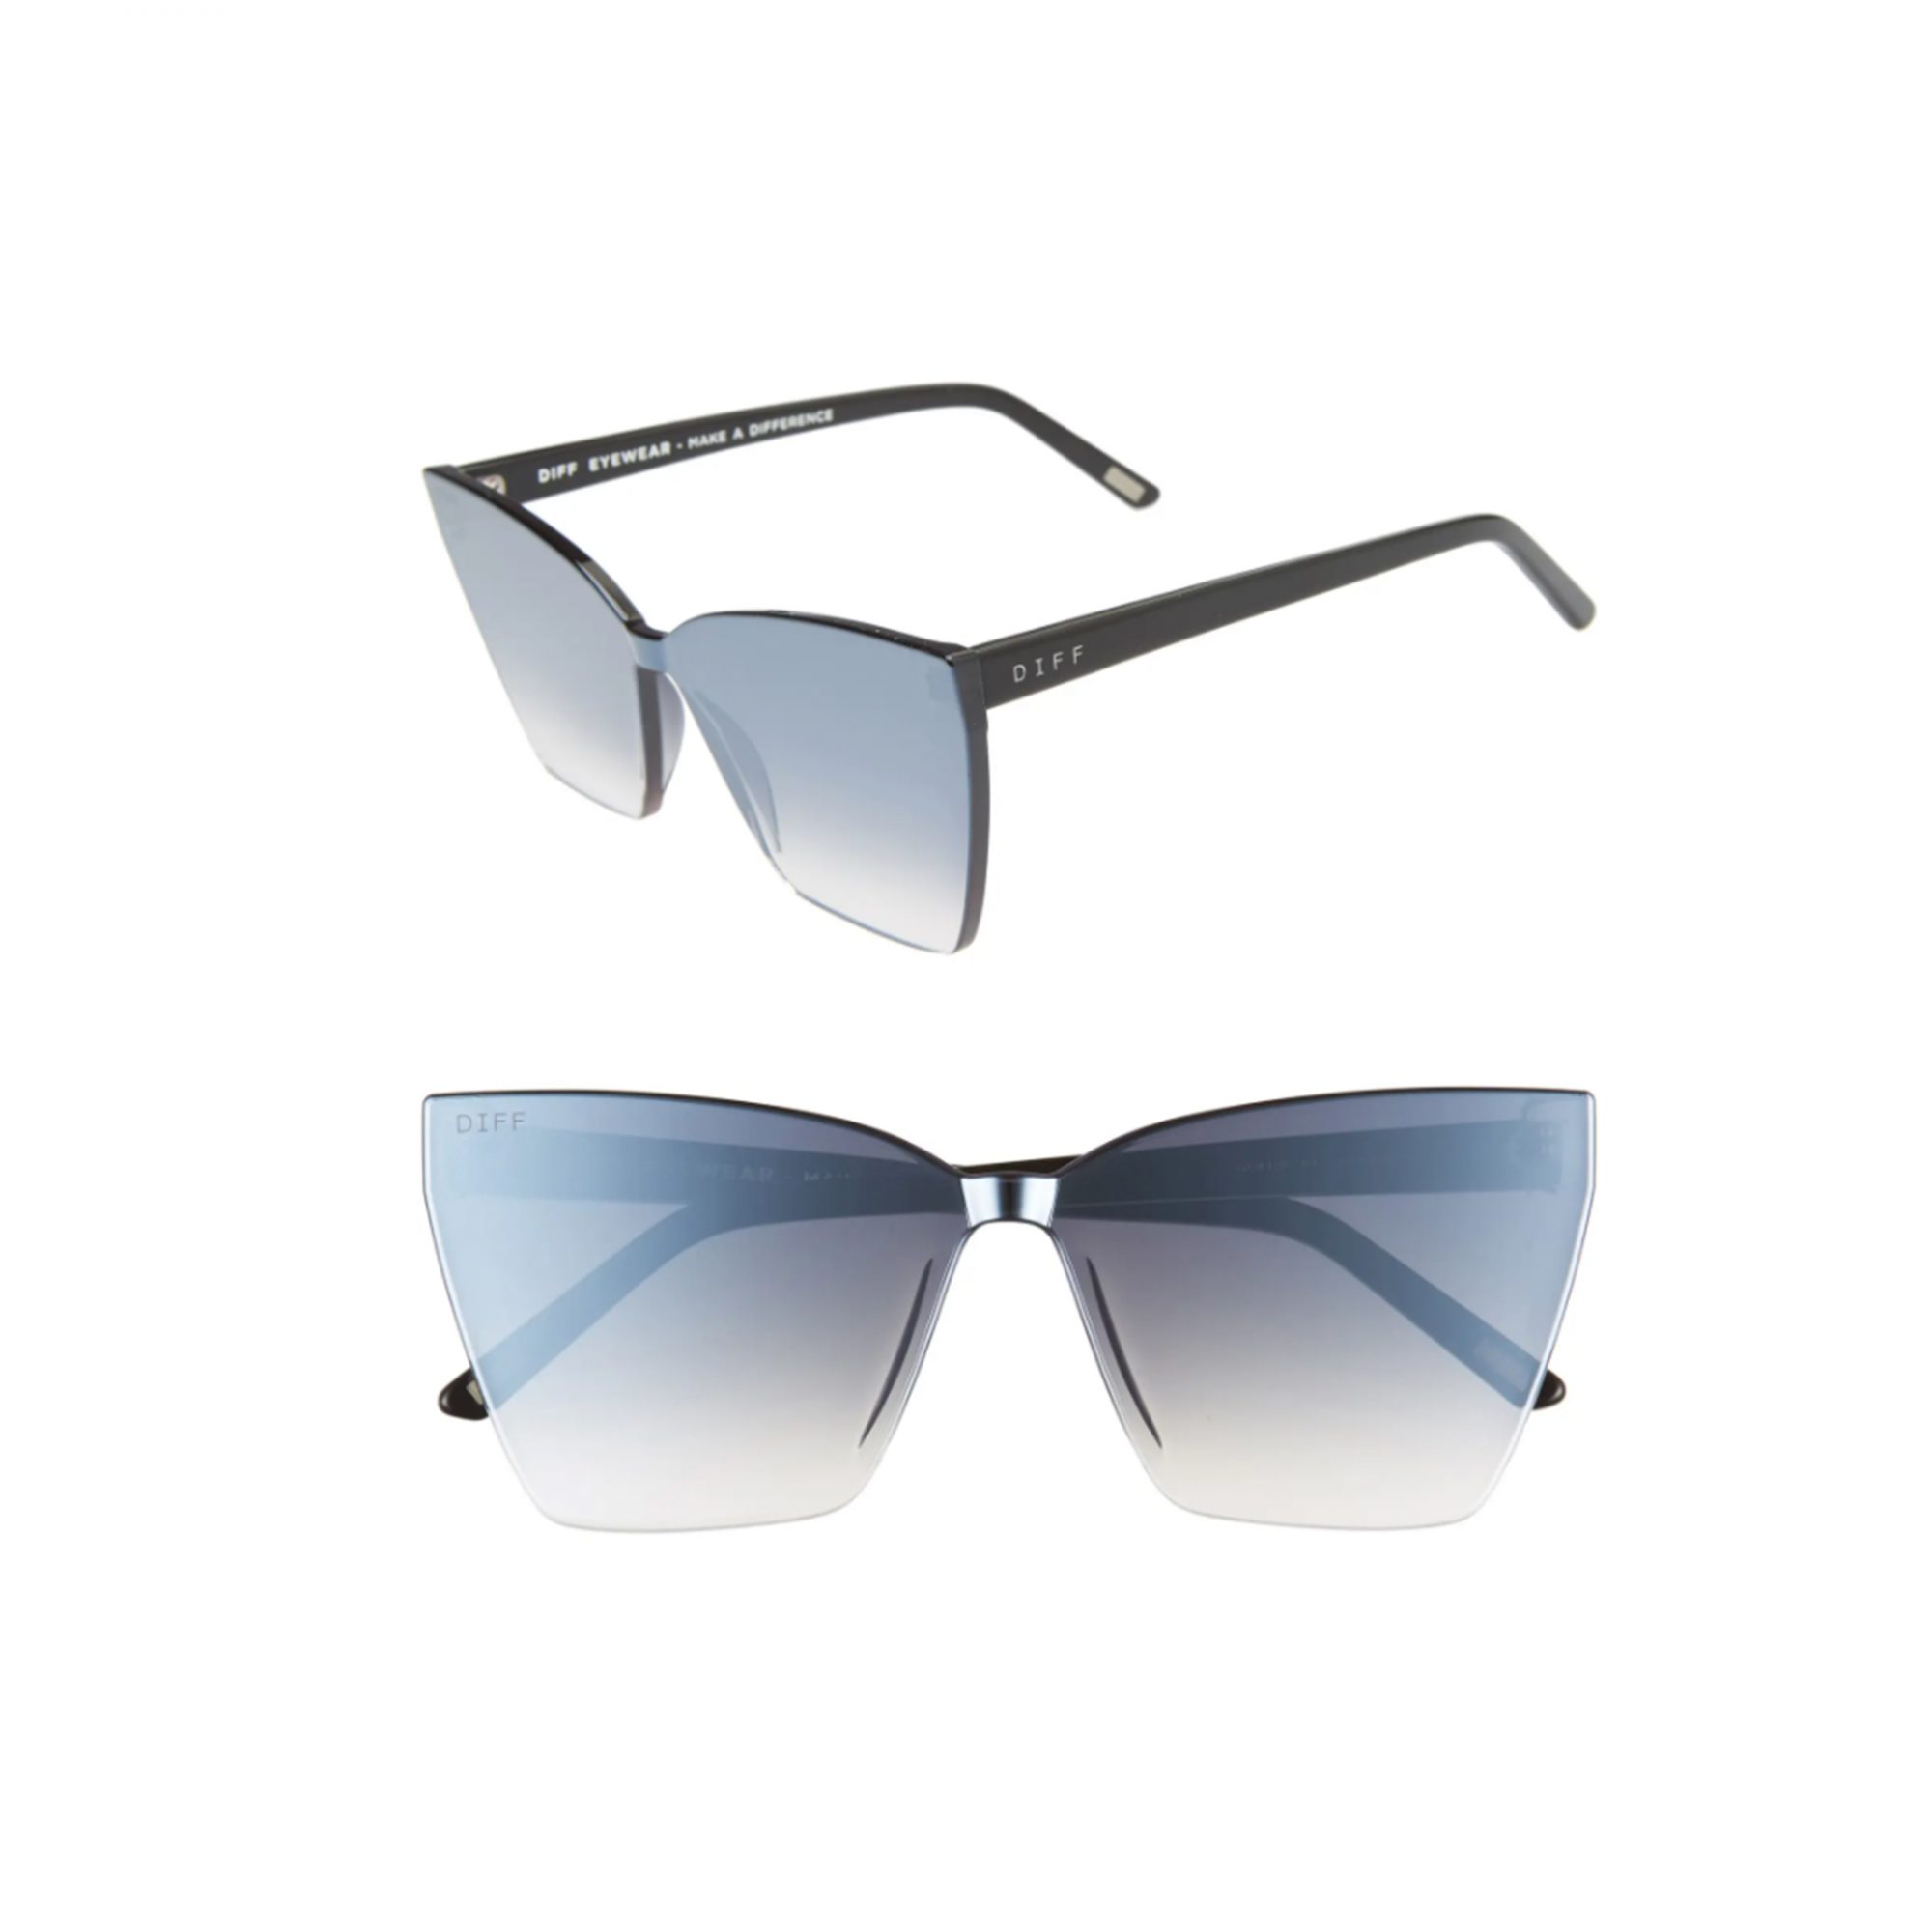 diff-mirrored-sunglasses